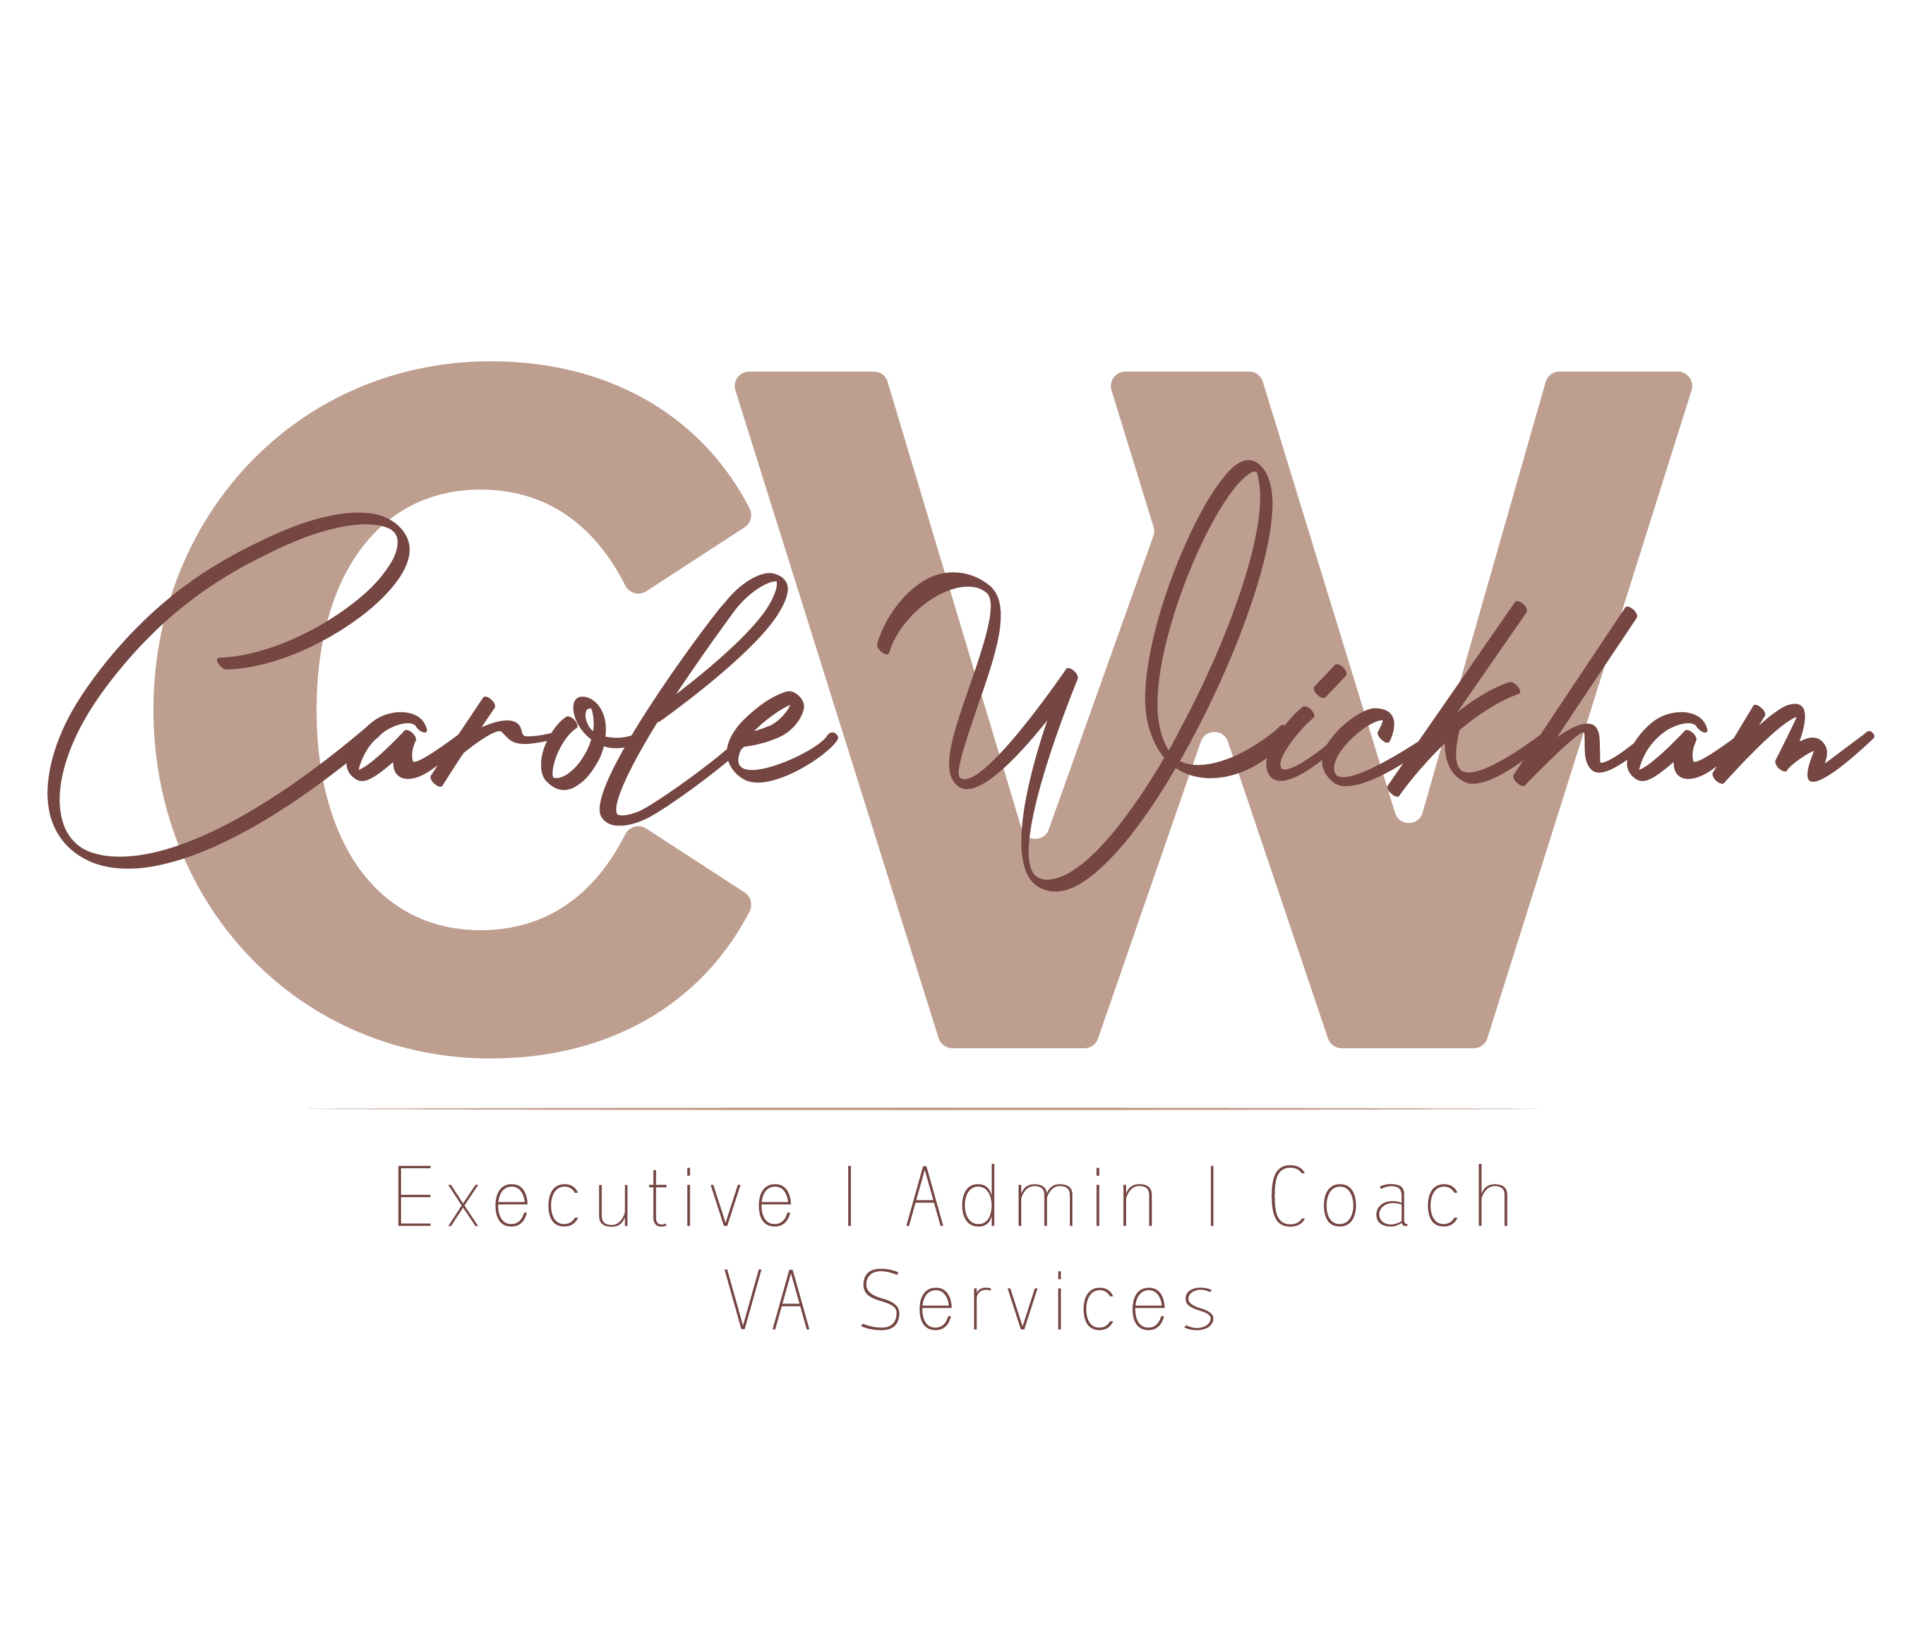 Carole Wickham Executive Admin Coach & VA Services